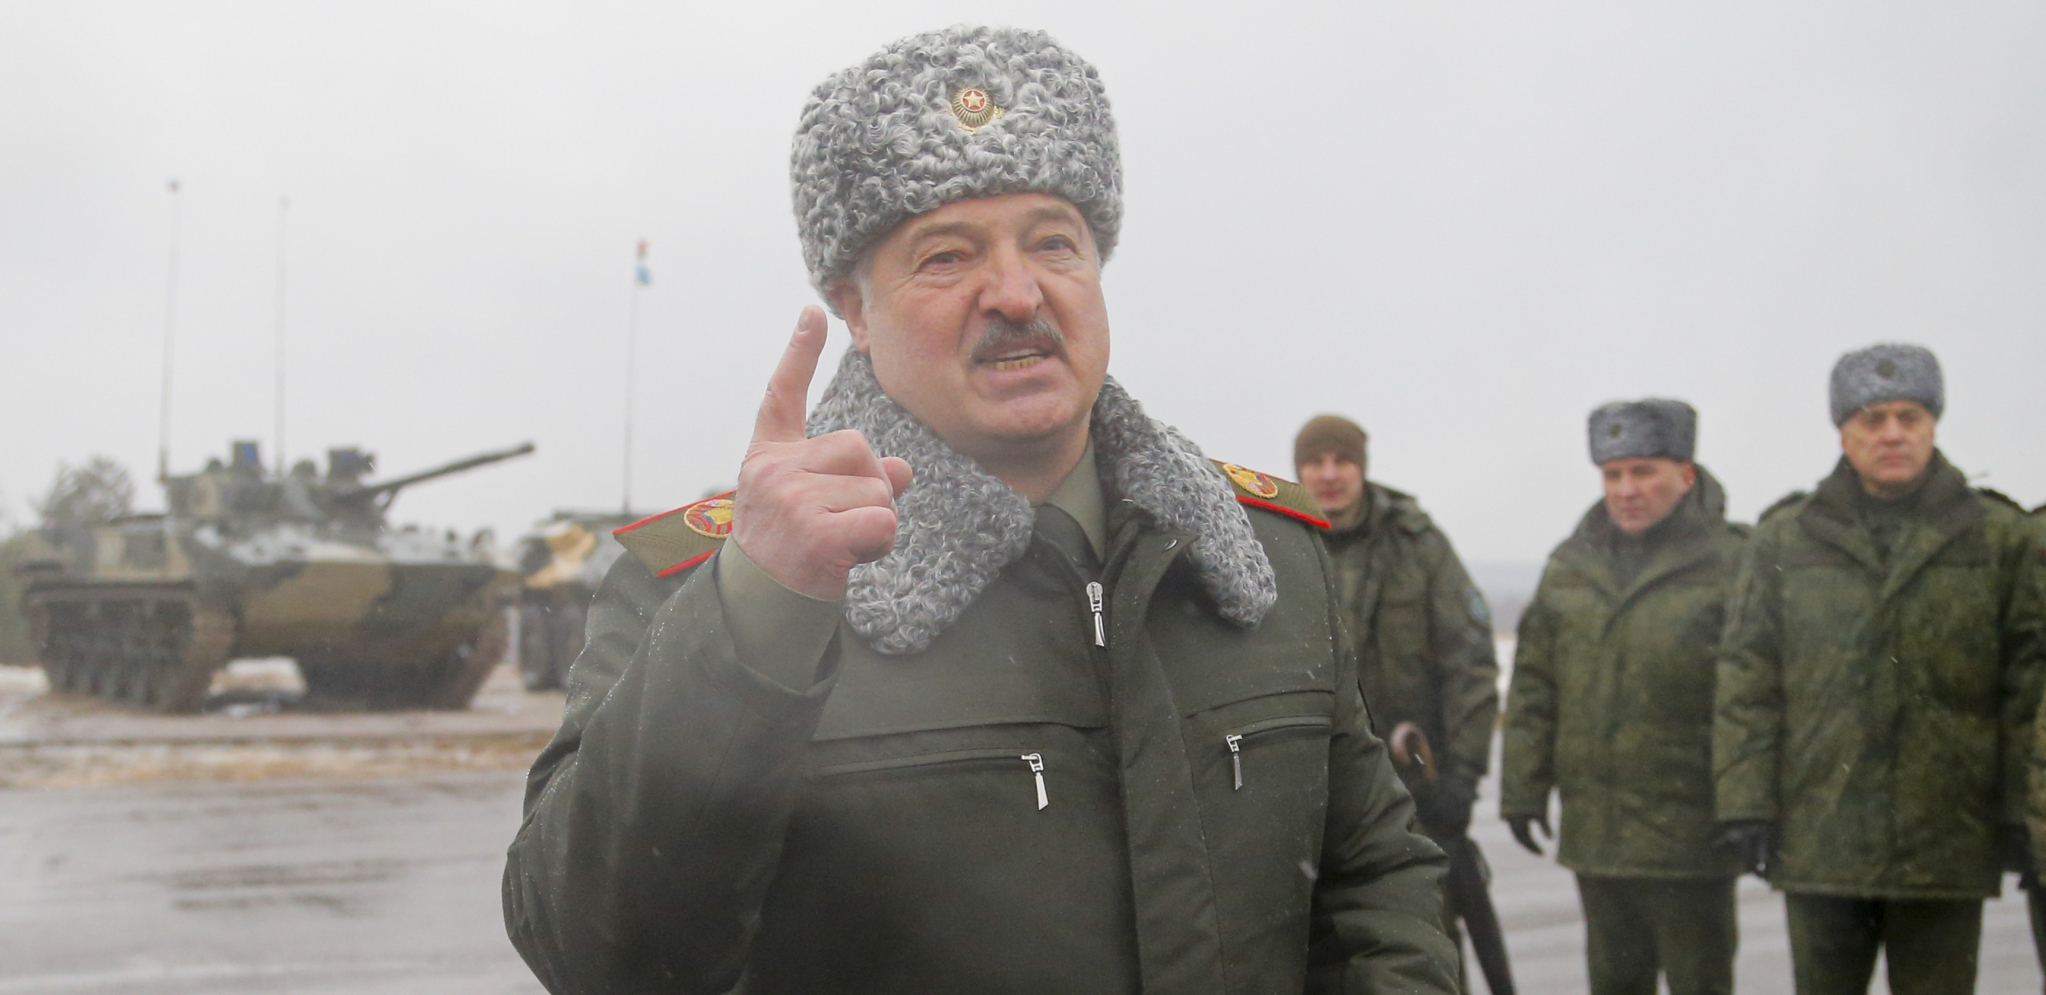 "SITUACIJA JE SADA OZBILJNO U ĆORSOKAKU" Lukašenko: Nisu potrebni nikakvi preduslovi, nego samo "komanda stop"